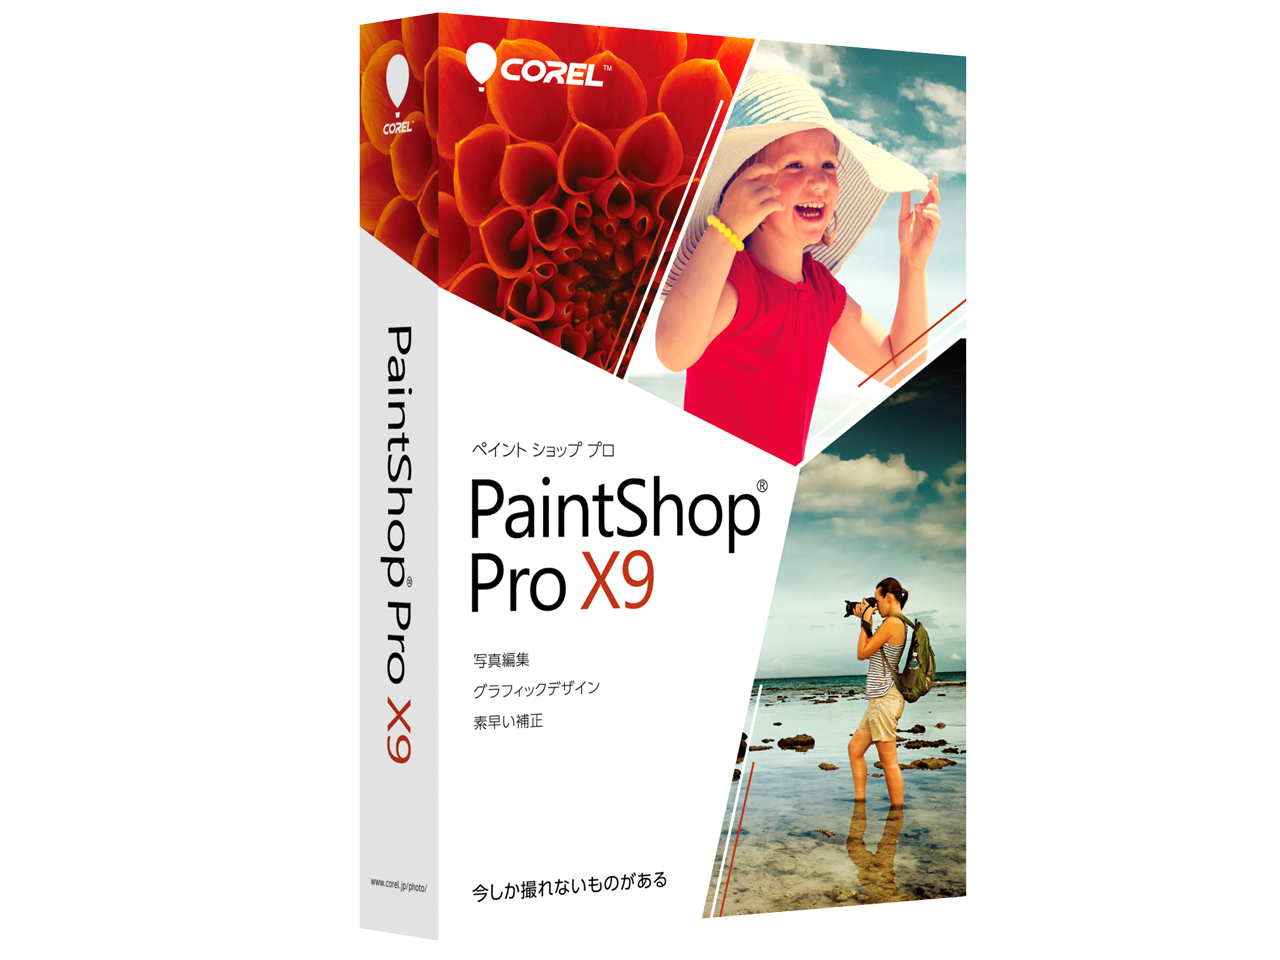 corel paintshop pro x9 ultimate review